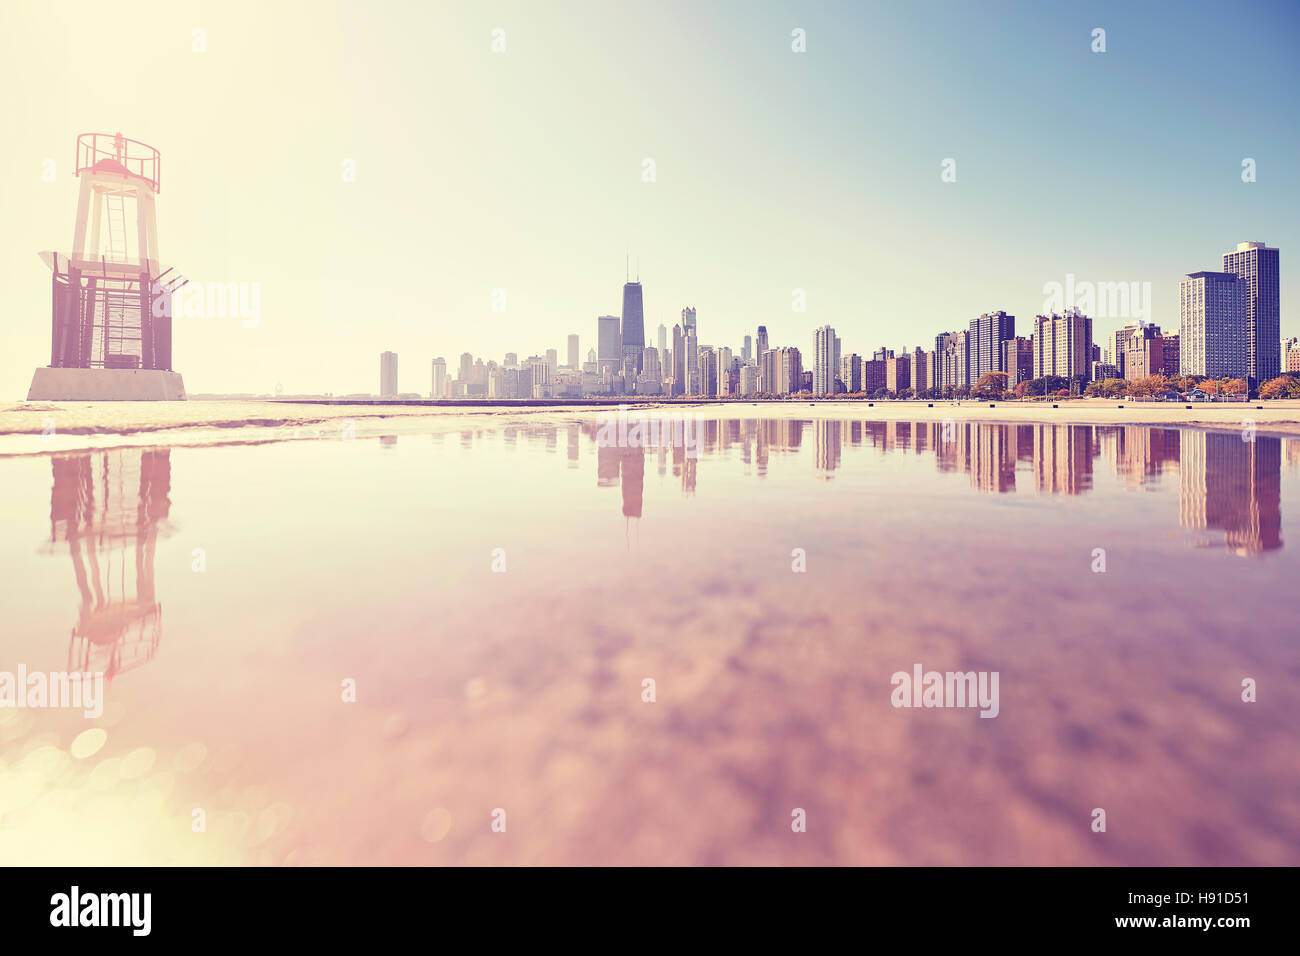 Retro getönten Sonnenaufgang in Chicago Skyline der Stadt spiegelt sich in einer Pfütze, USA. Stockfoto